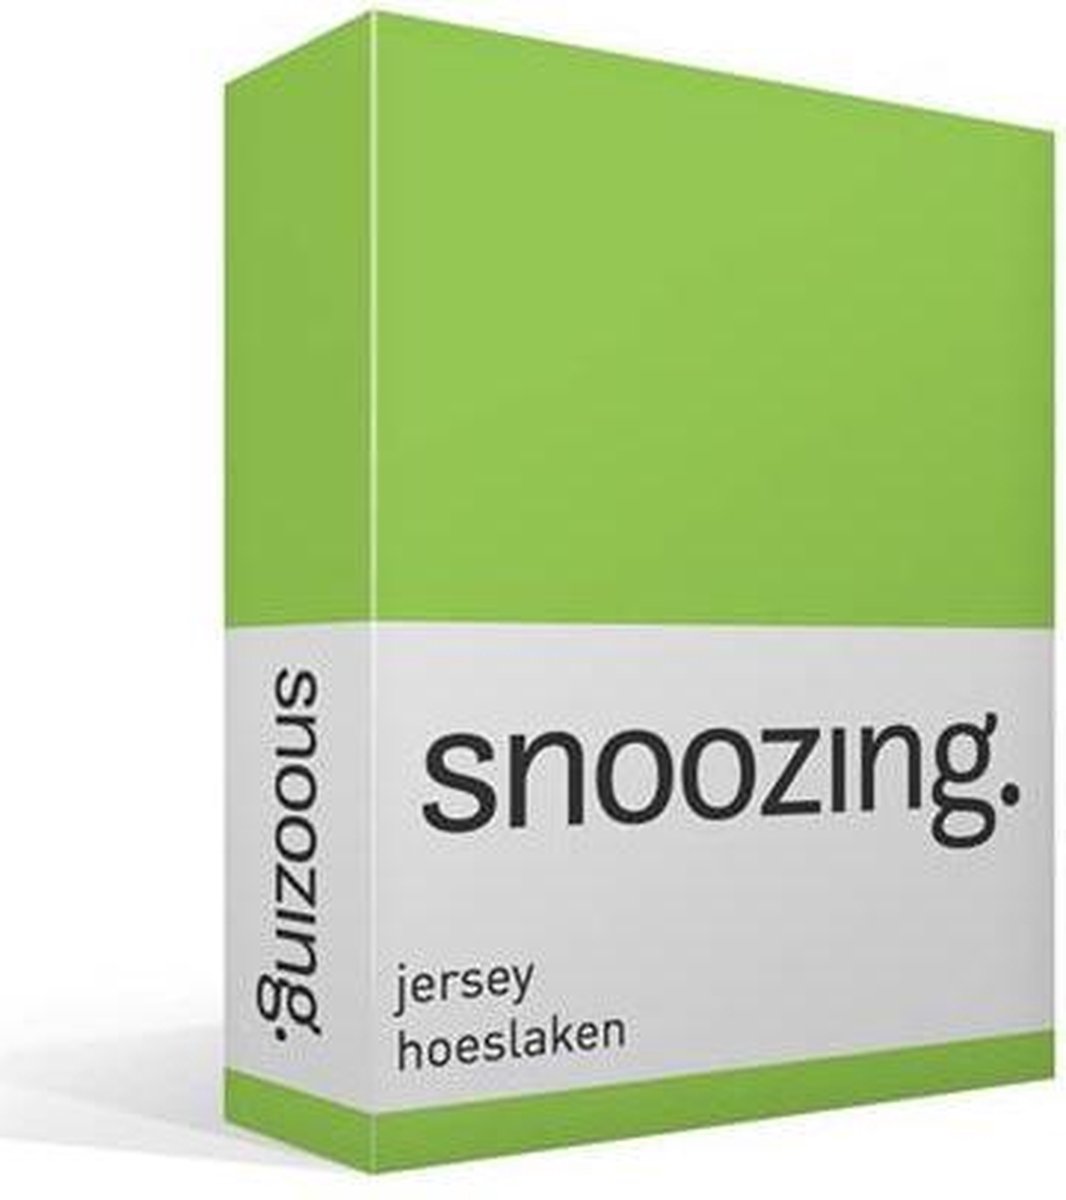 Snoozing Jersey Hoeslaken - 100% Gebreide Jersey Katoen - Lits-jumeaux (200x210/220 Cm) - Lime - Groen